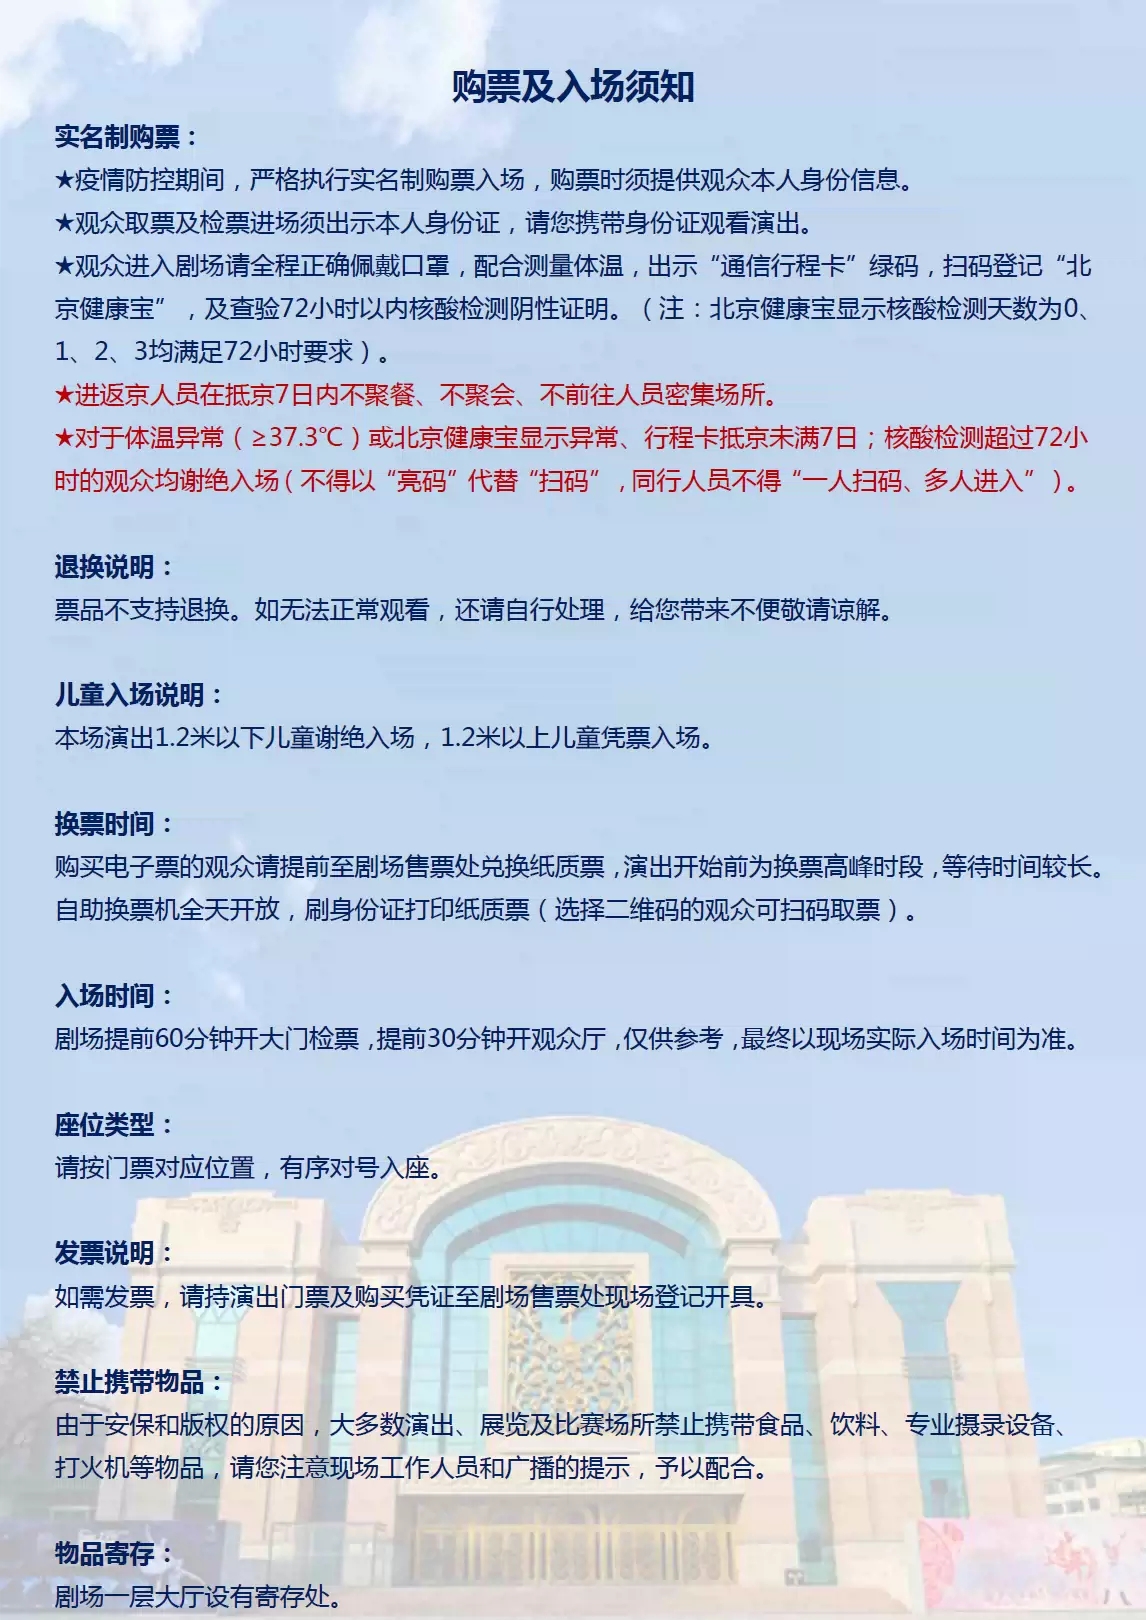 2023喜迎新春 北方昆曲剧院经典剧目展演 昆曲《西厢记》-北京站